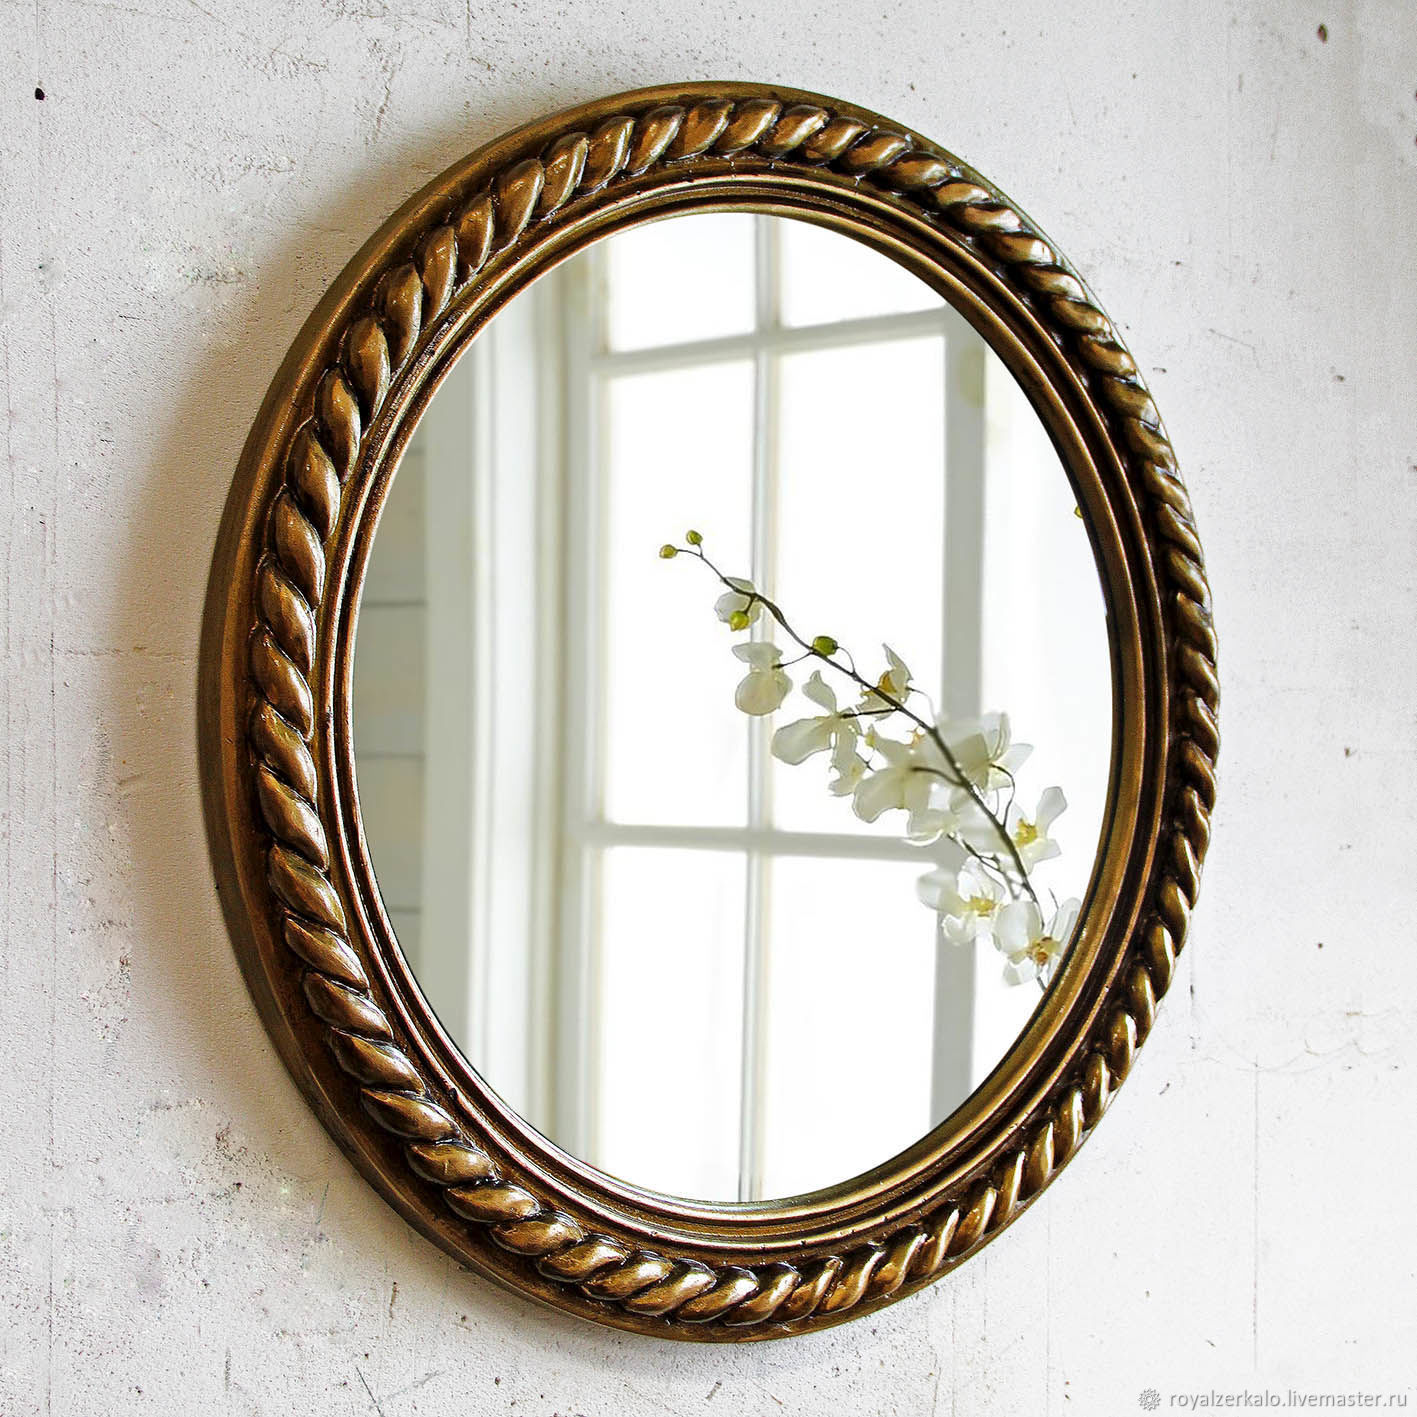  круглое плетёное, зеркало настенное, зеркало для прихожей .